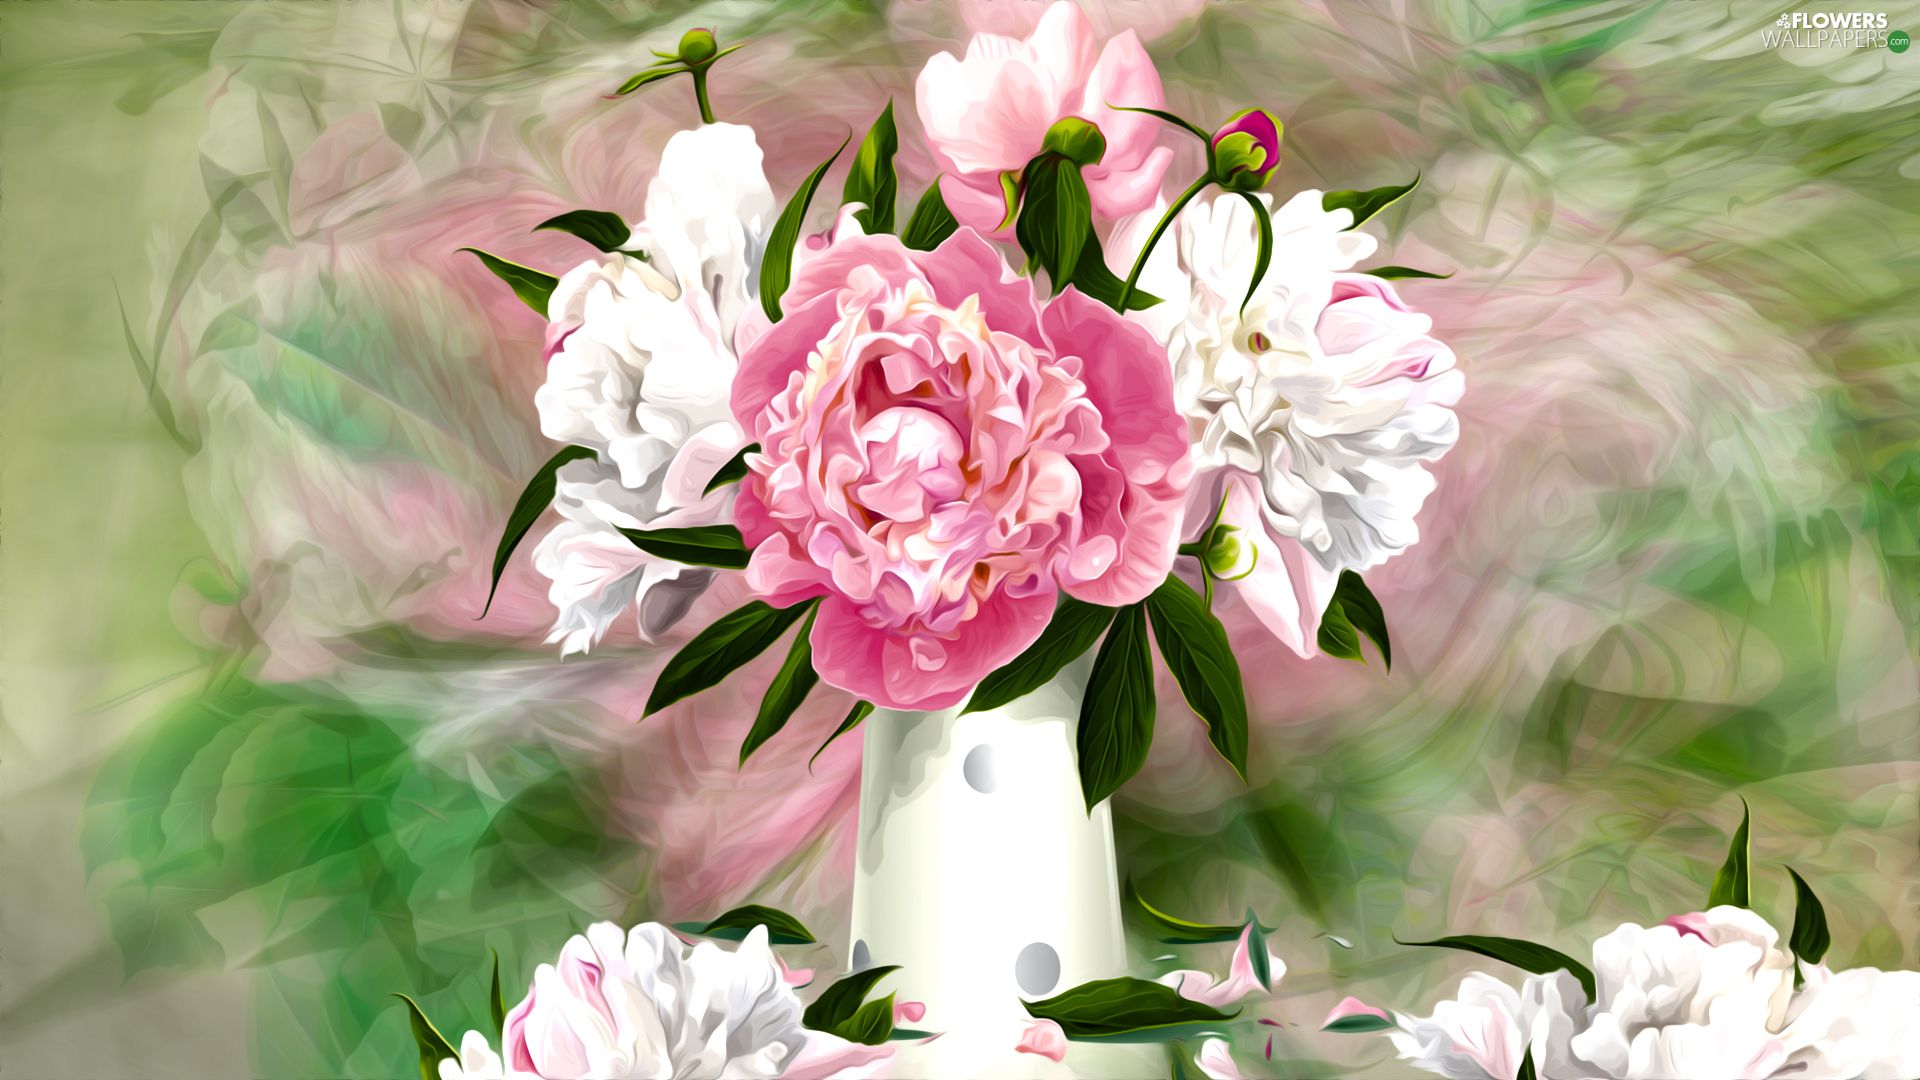 Peonies, graphics, Vase, bouquet, Flowers wallpaper: 1920x1080